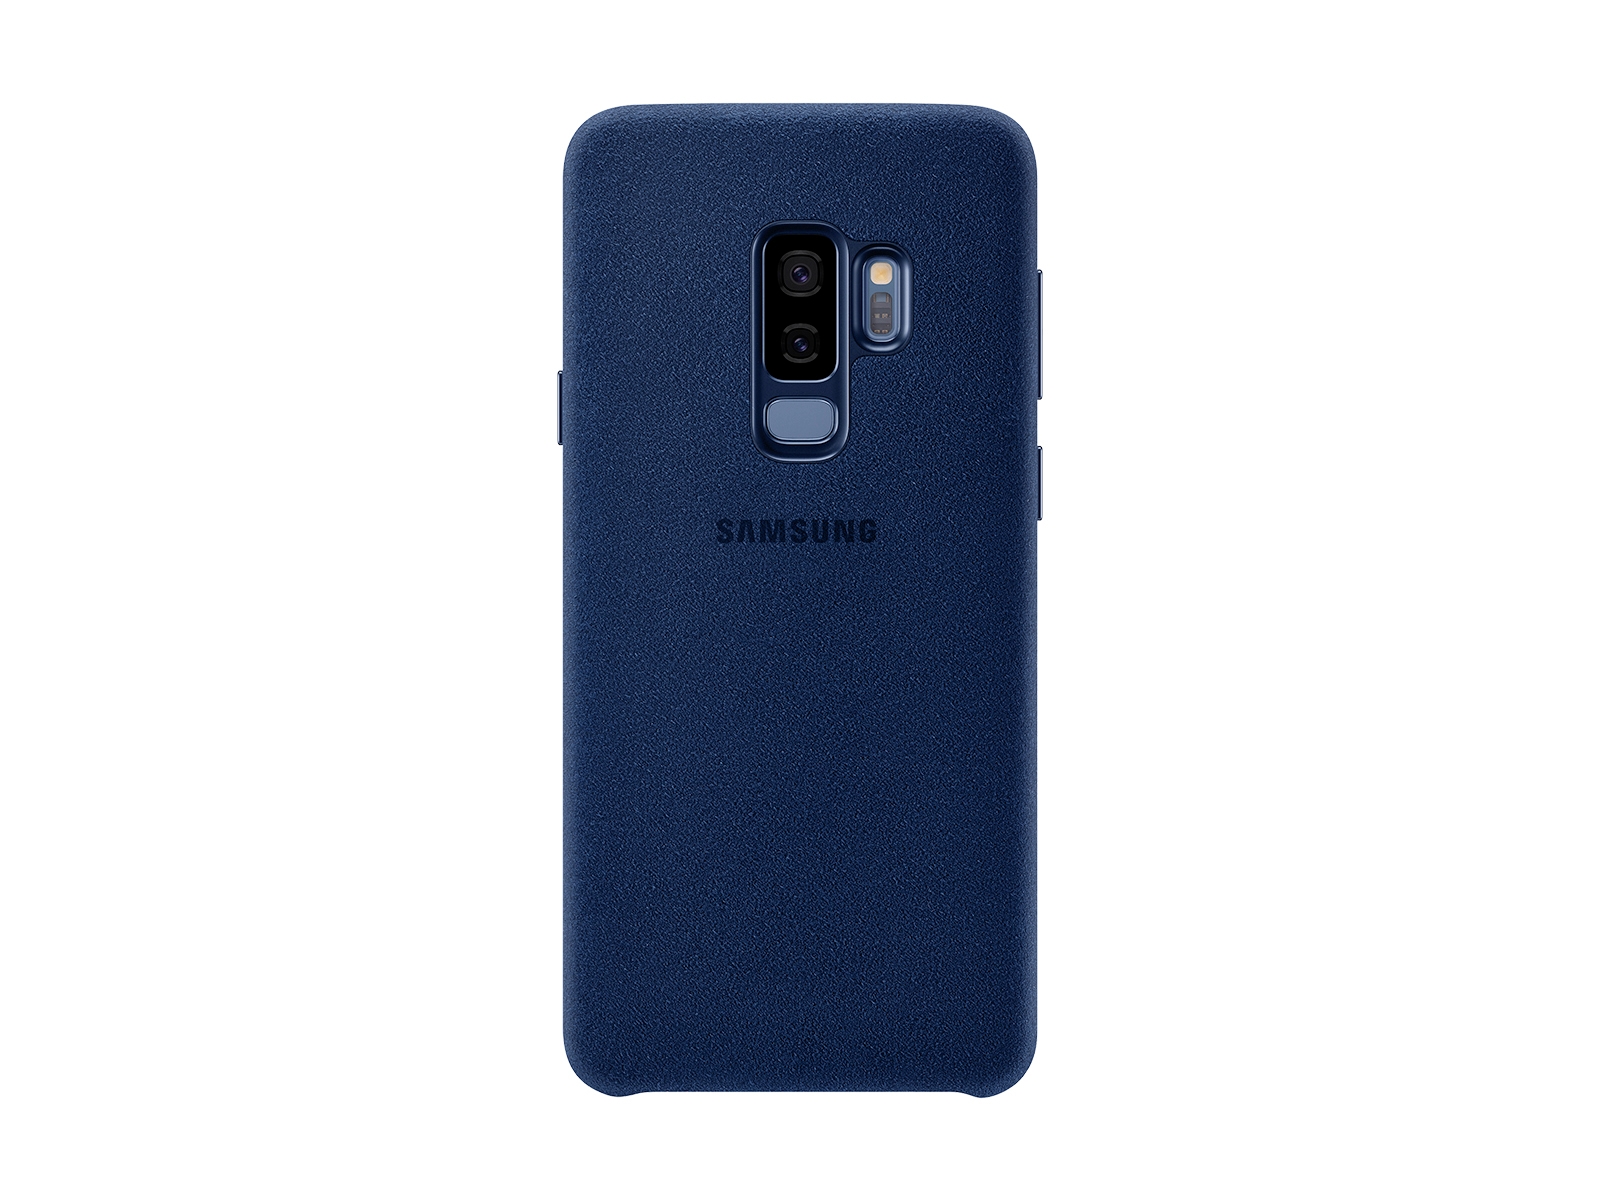 Funda para Galaxy S9+ Alcantara, accesorios para móviles EF-XG965ALEGUS | Samsung ES